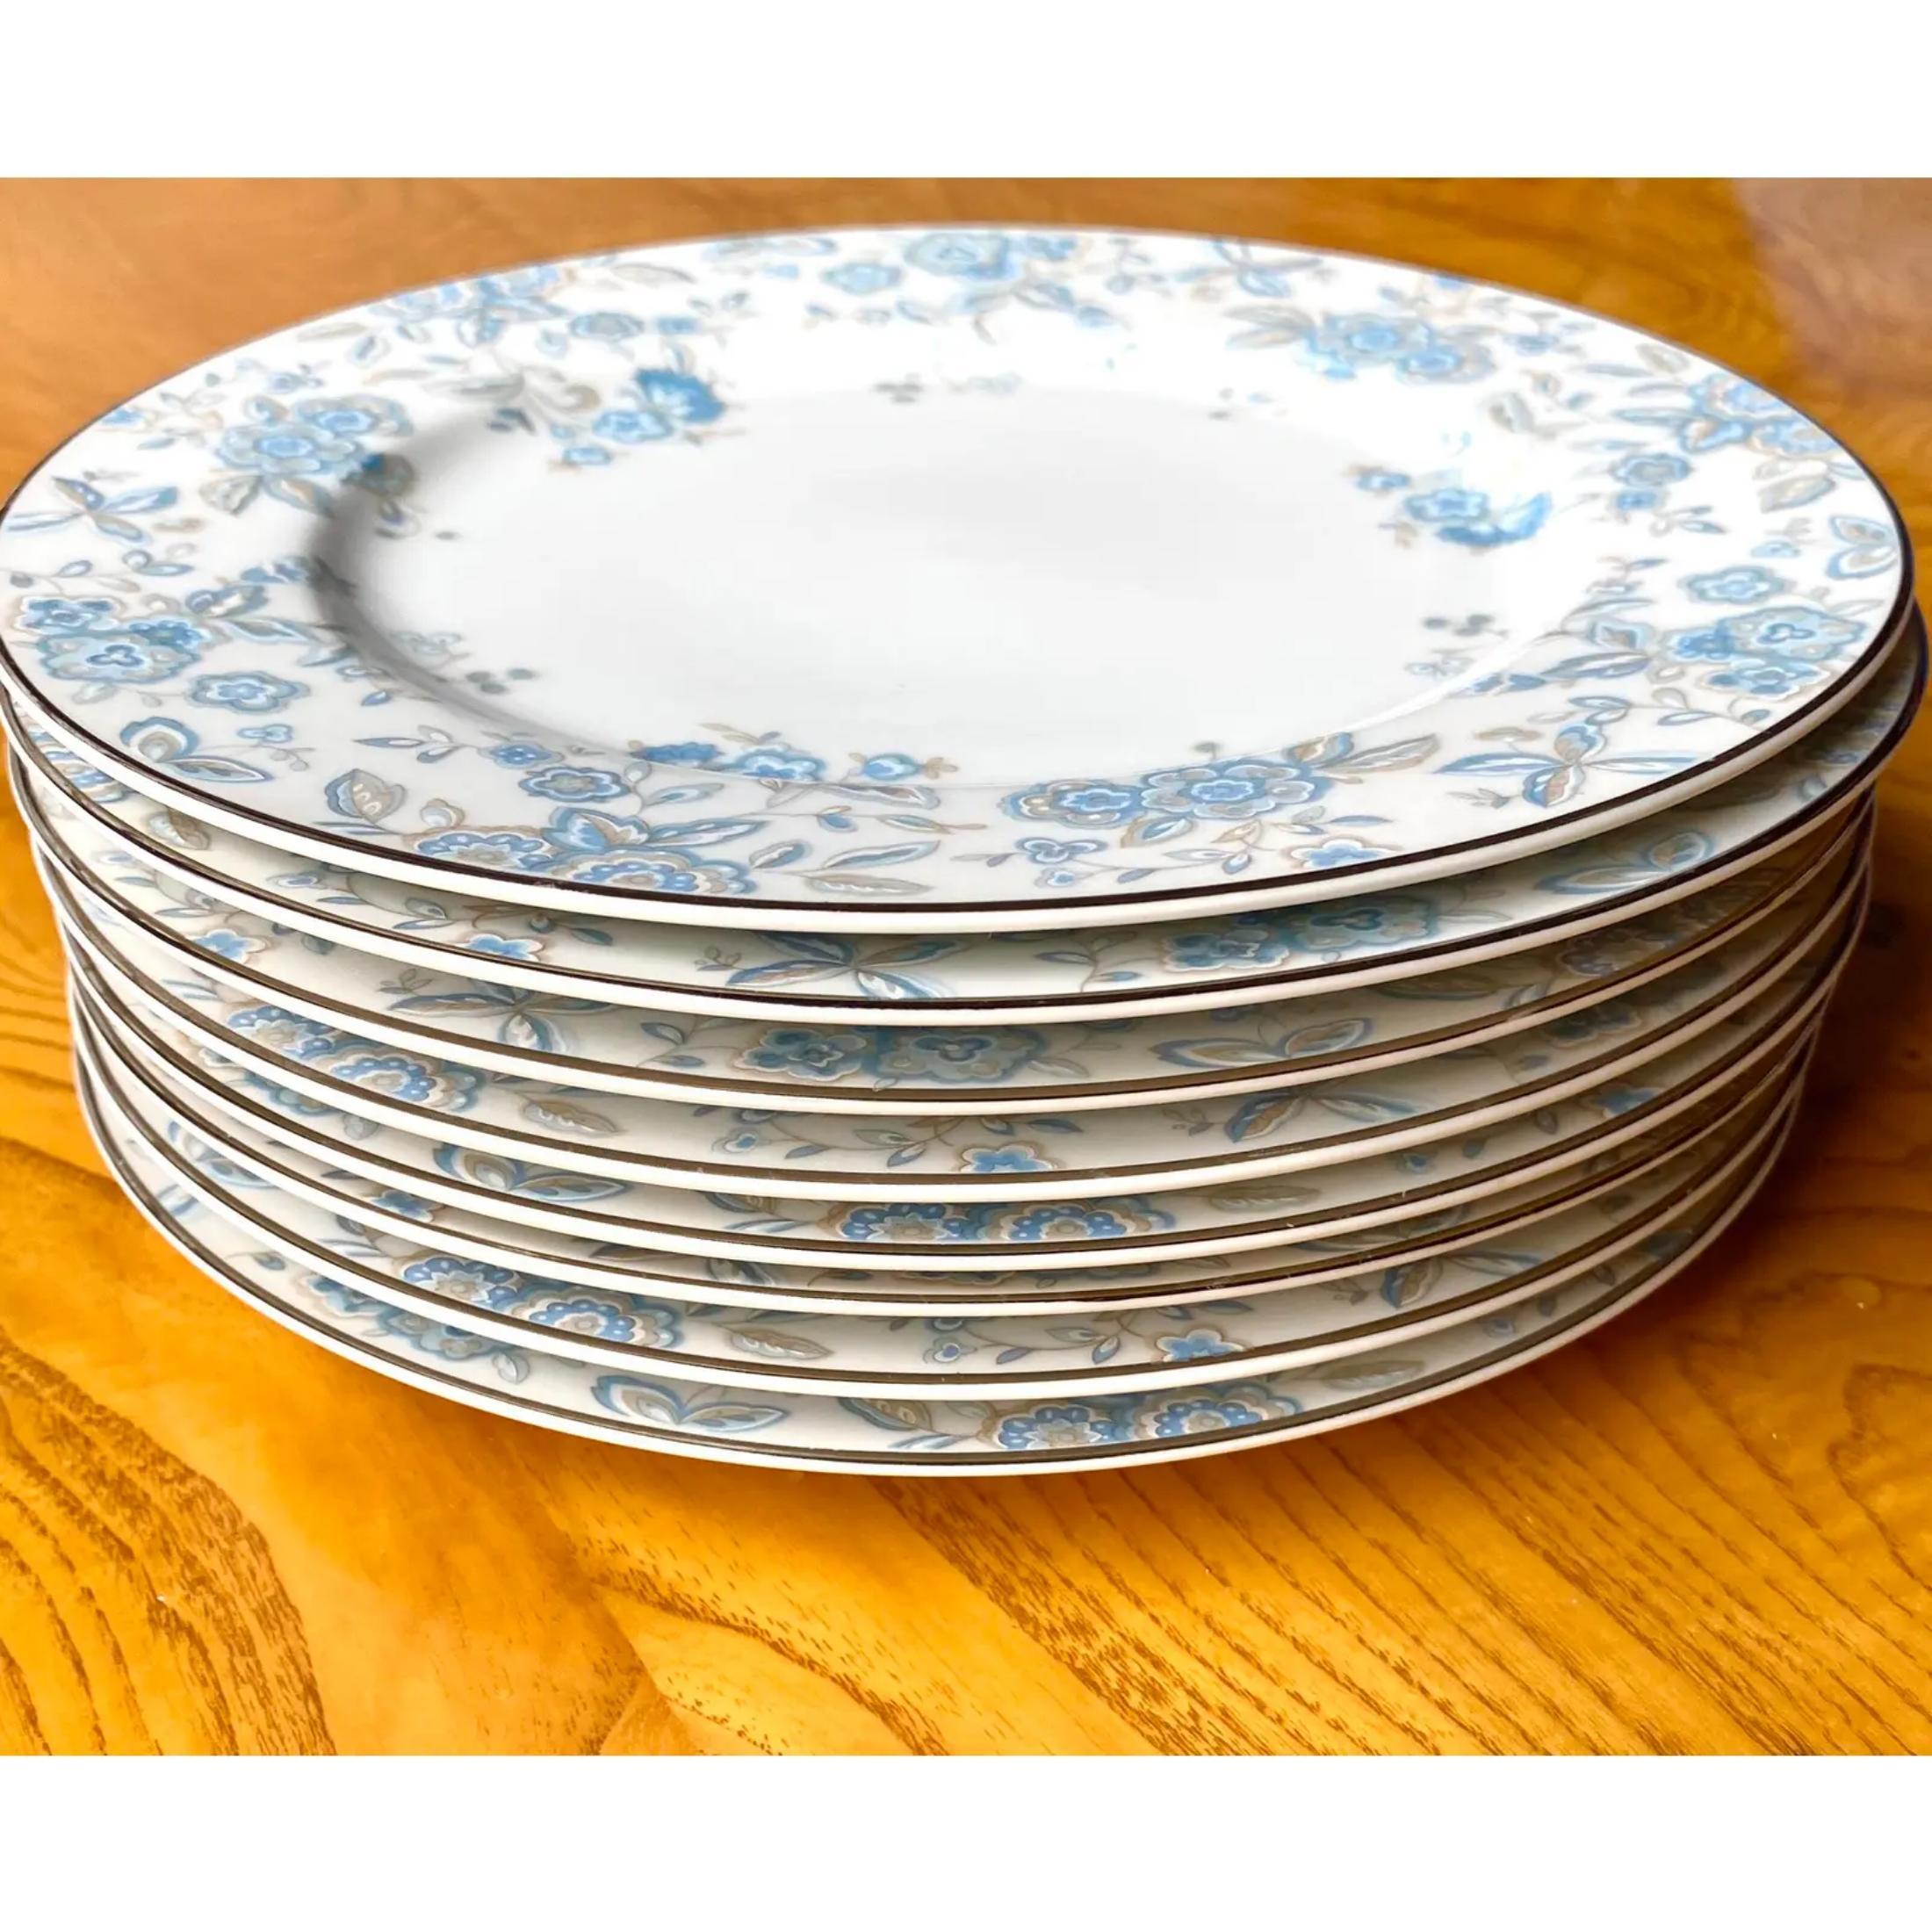 Magnifique ensemble de Townes Vintage. Le plus joli motif de fleurs bleues flottantes avec un bord argenté.
8 assiettes plates
8 assiettes à salade
8 bols à soupe
8 assiettes à pain